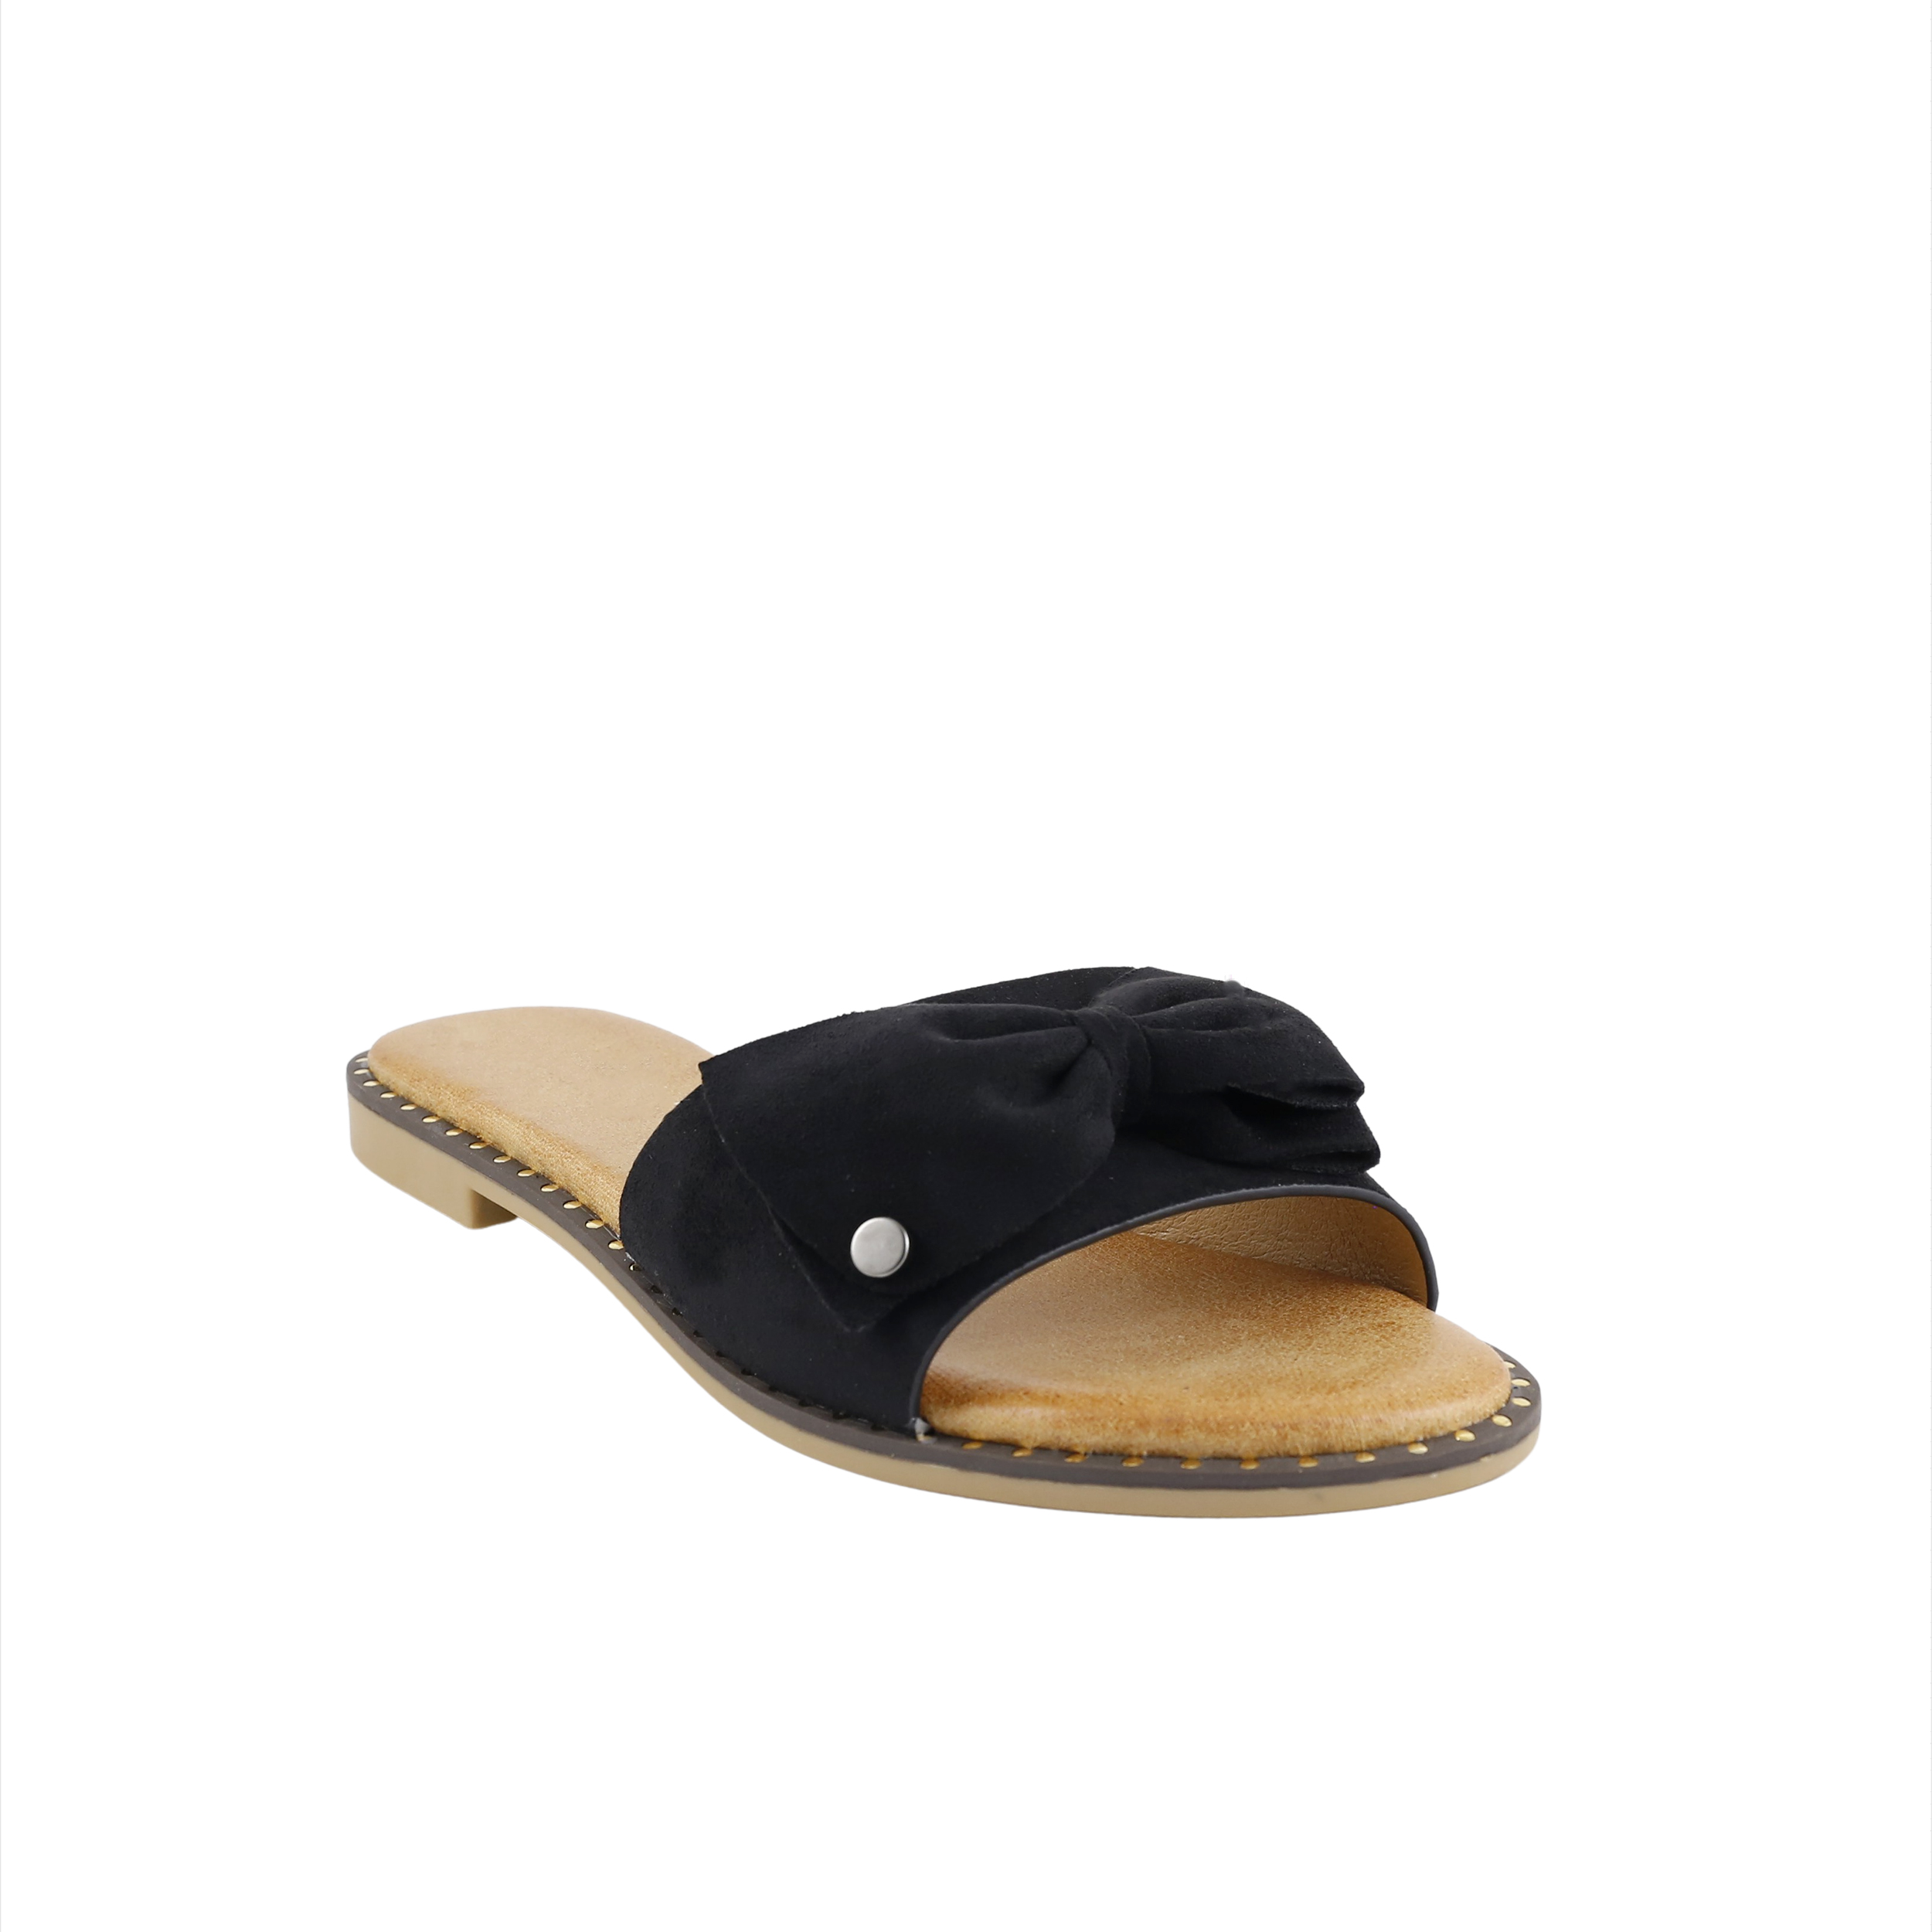 Woman Shoes Sandals - Flip Flops Black flip flop with bow